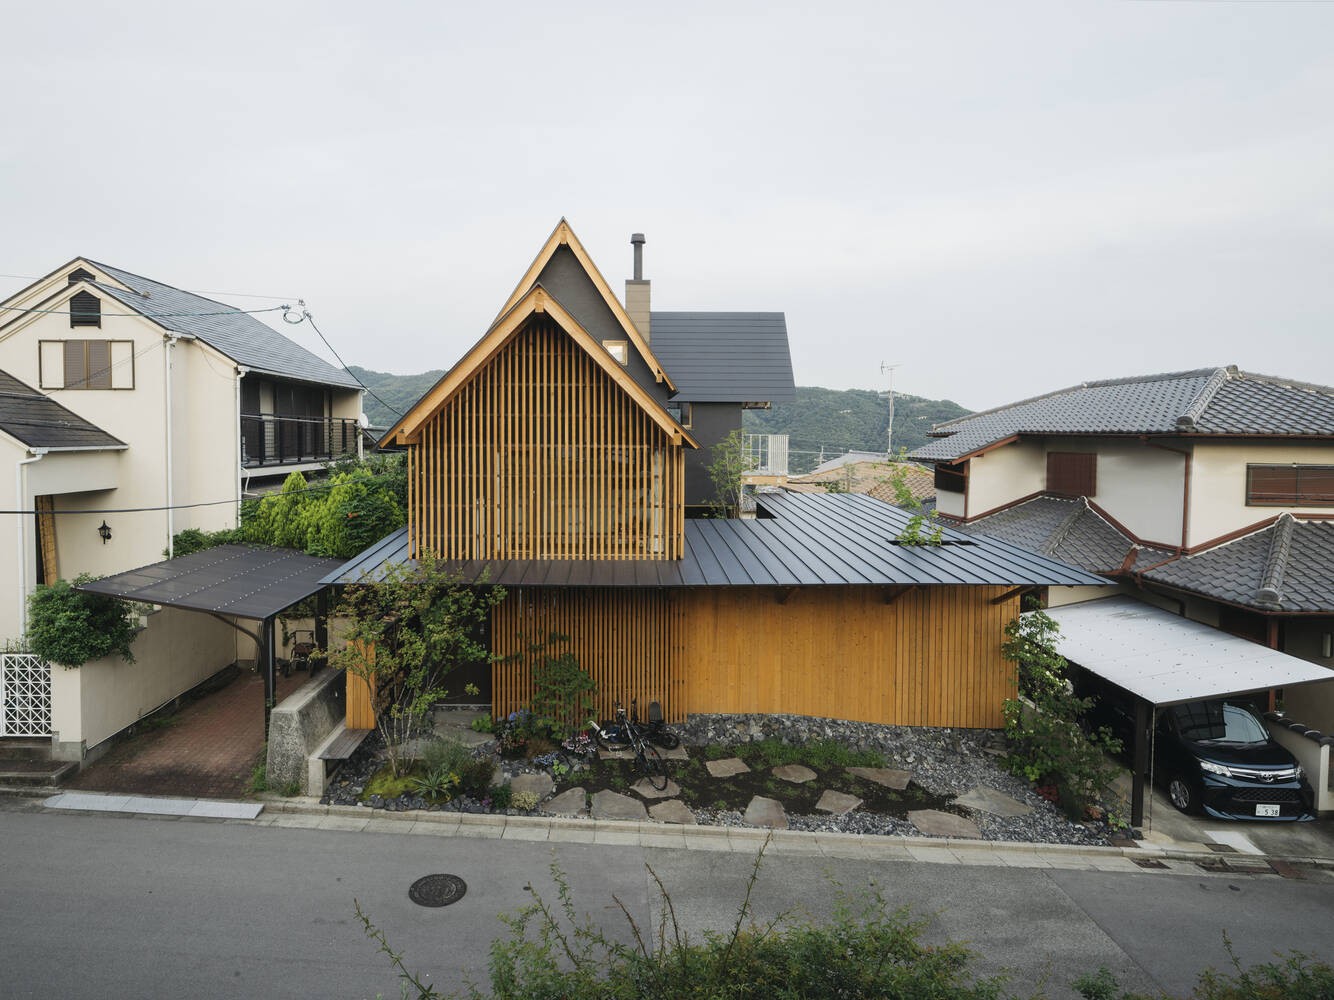 
Nightingale House với 3 tầng, bên ngoài ốp gỗ và lợp ngói, thể hiện nét đặc trưng của ngôi nhà truyền thống của Nhật Bản
